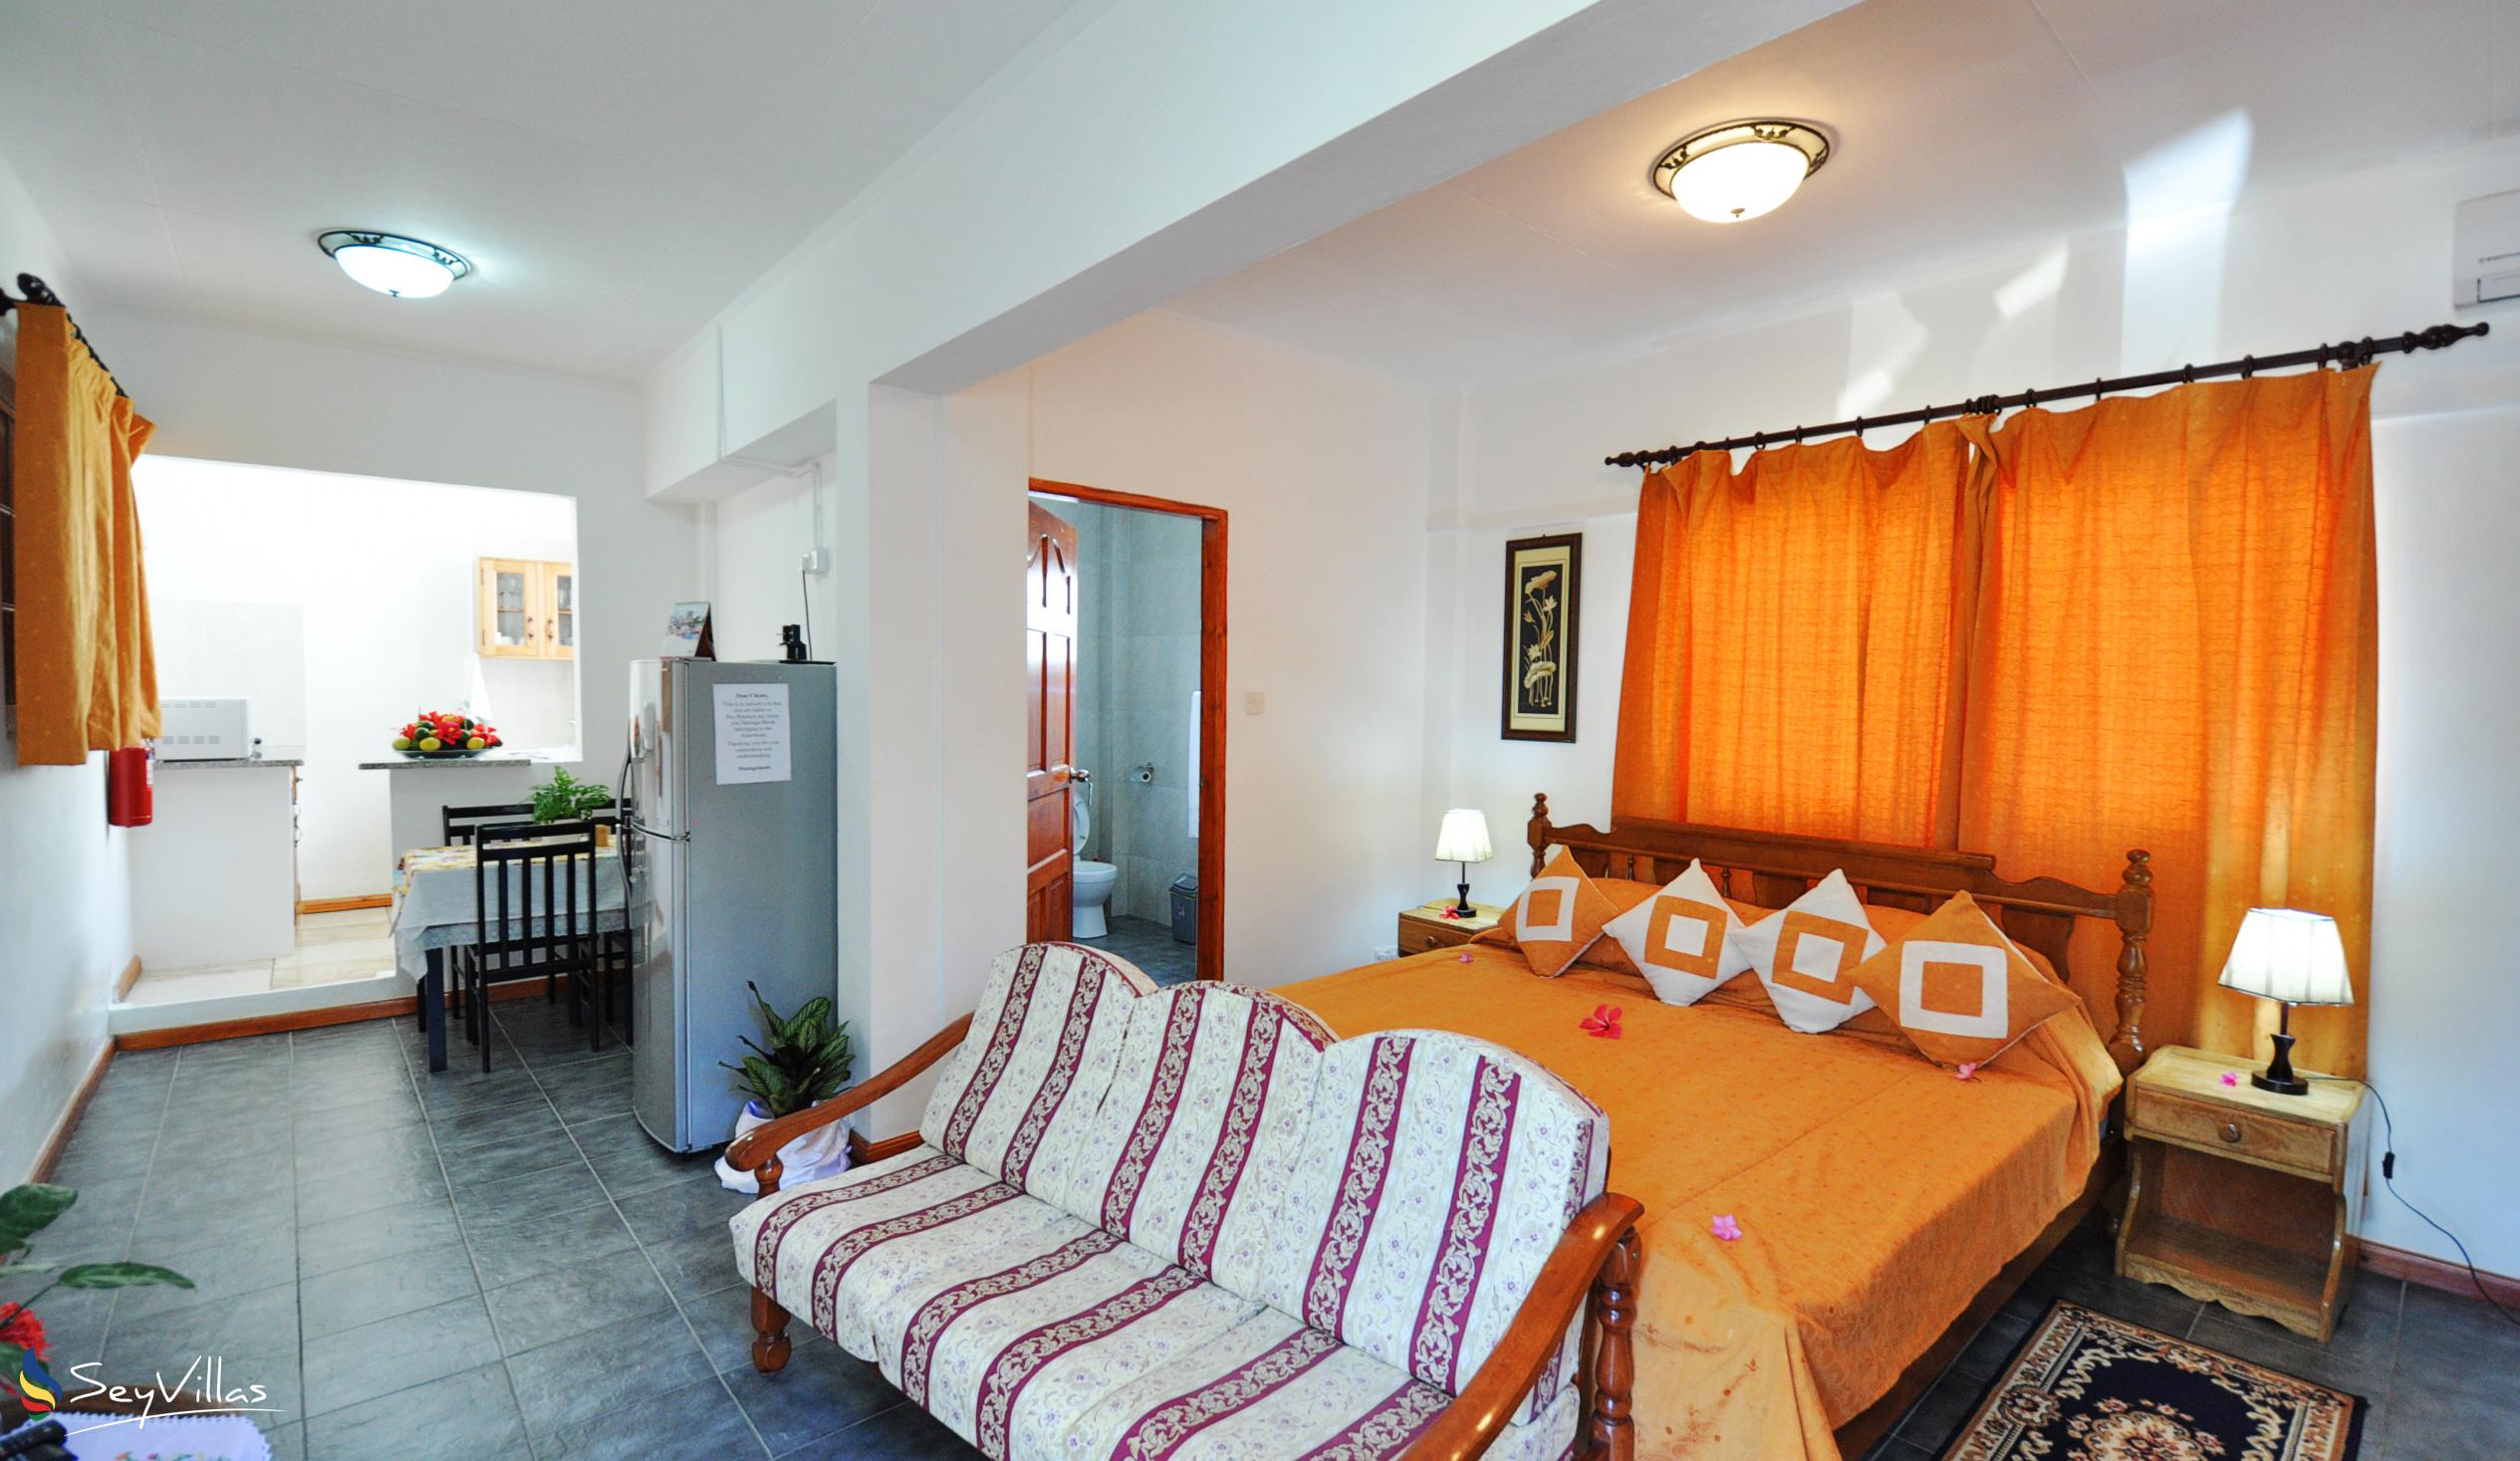 Photo 7: Row's Villa - Small apartment - Mahé (Seychelles)